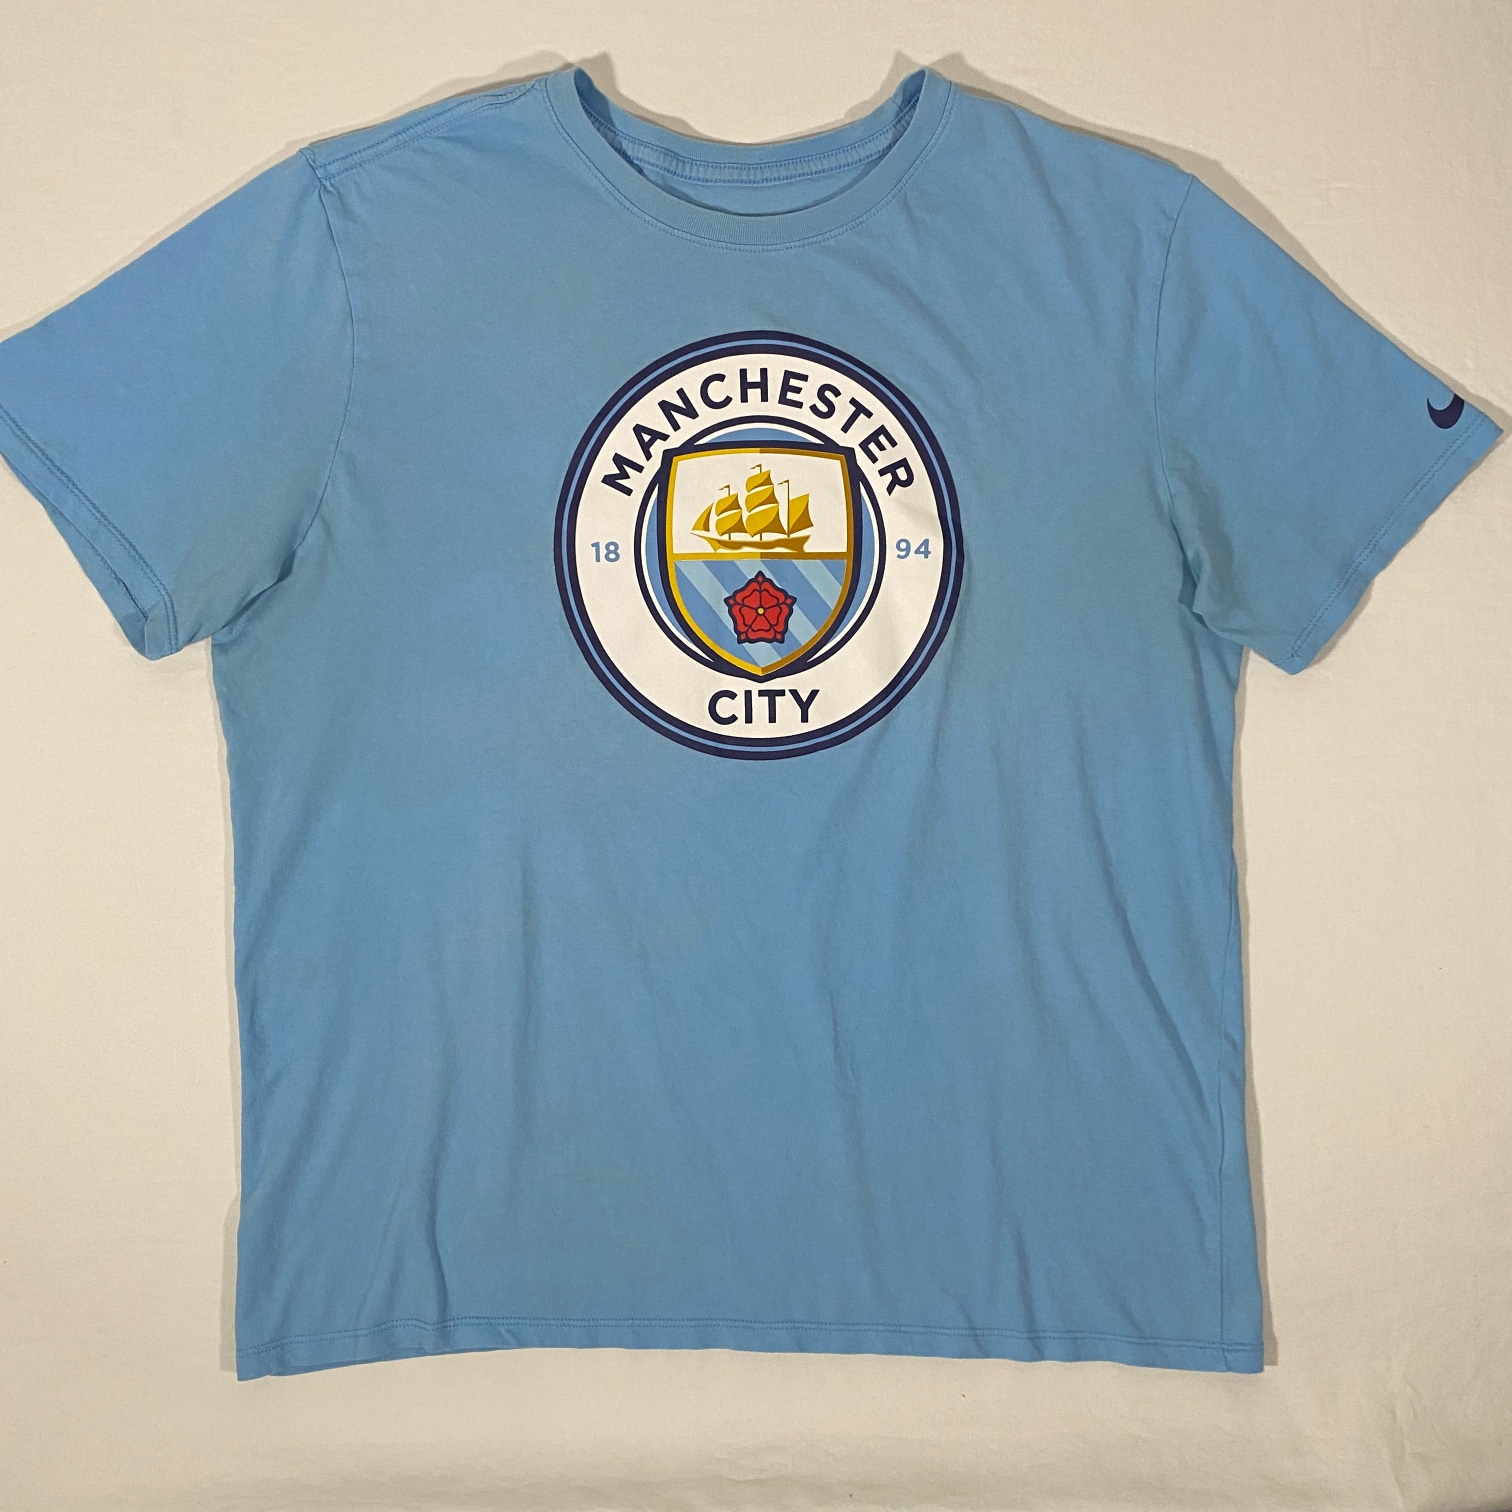 NIKE Manchester City FC Evergreen Crest Mens Size XL Light Blue Soccer T Shirt